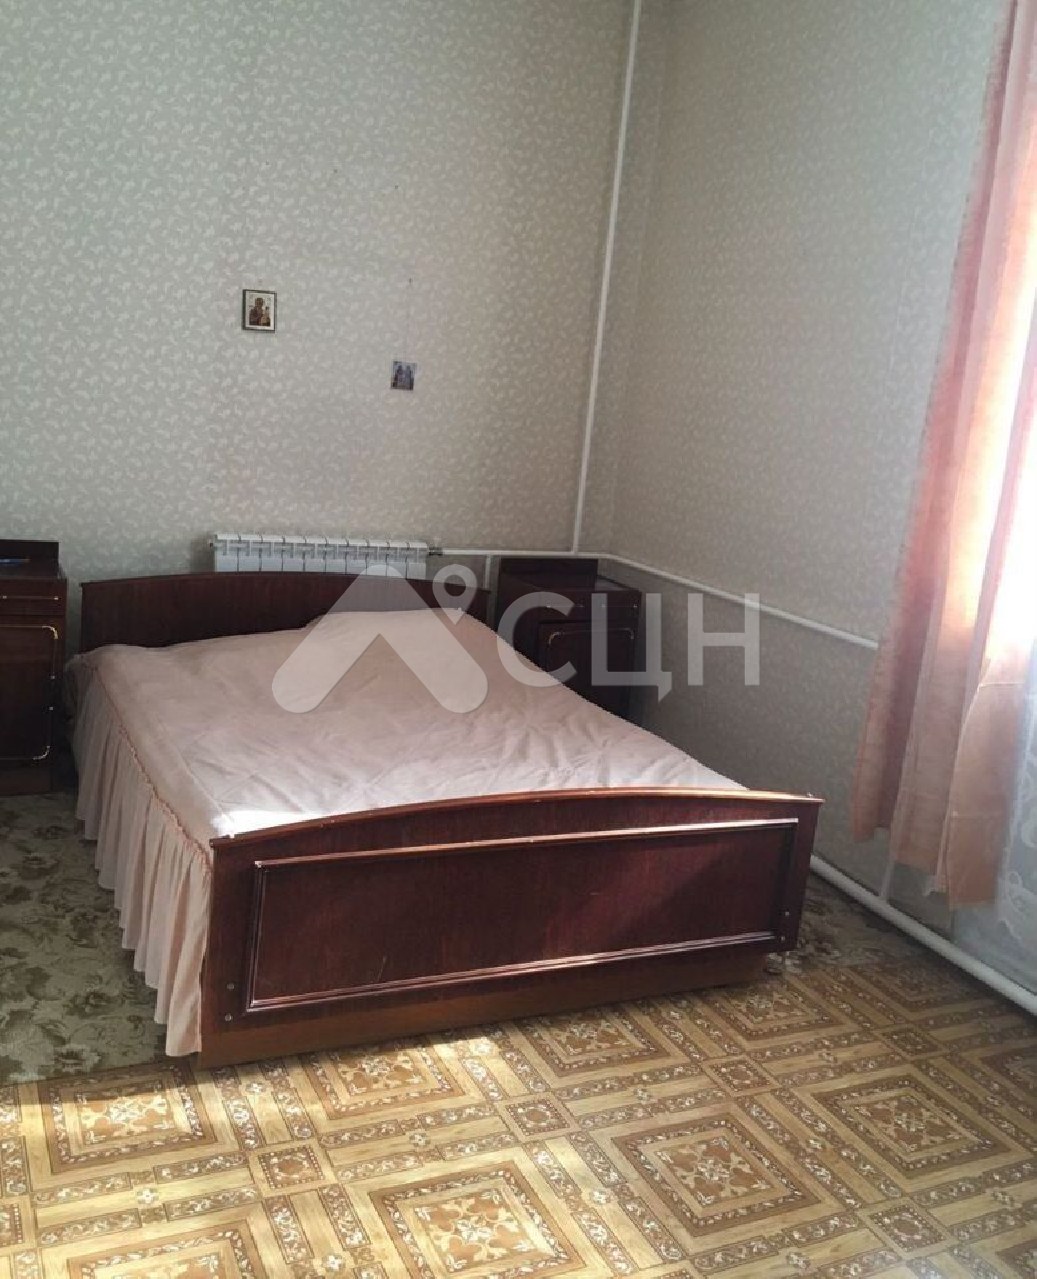 обЪявления саров квартиры
: Г. Саров, проспект Ленина, 8, 3-комн квартира, этаж 1 из 4, продажа.